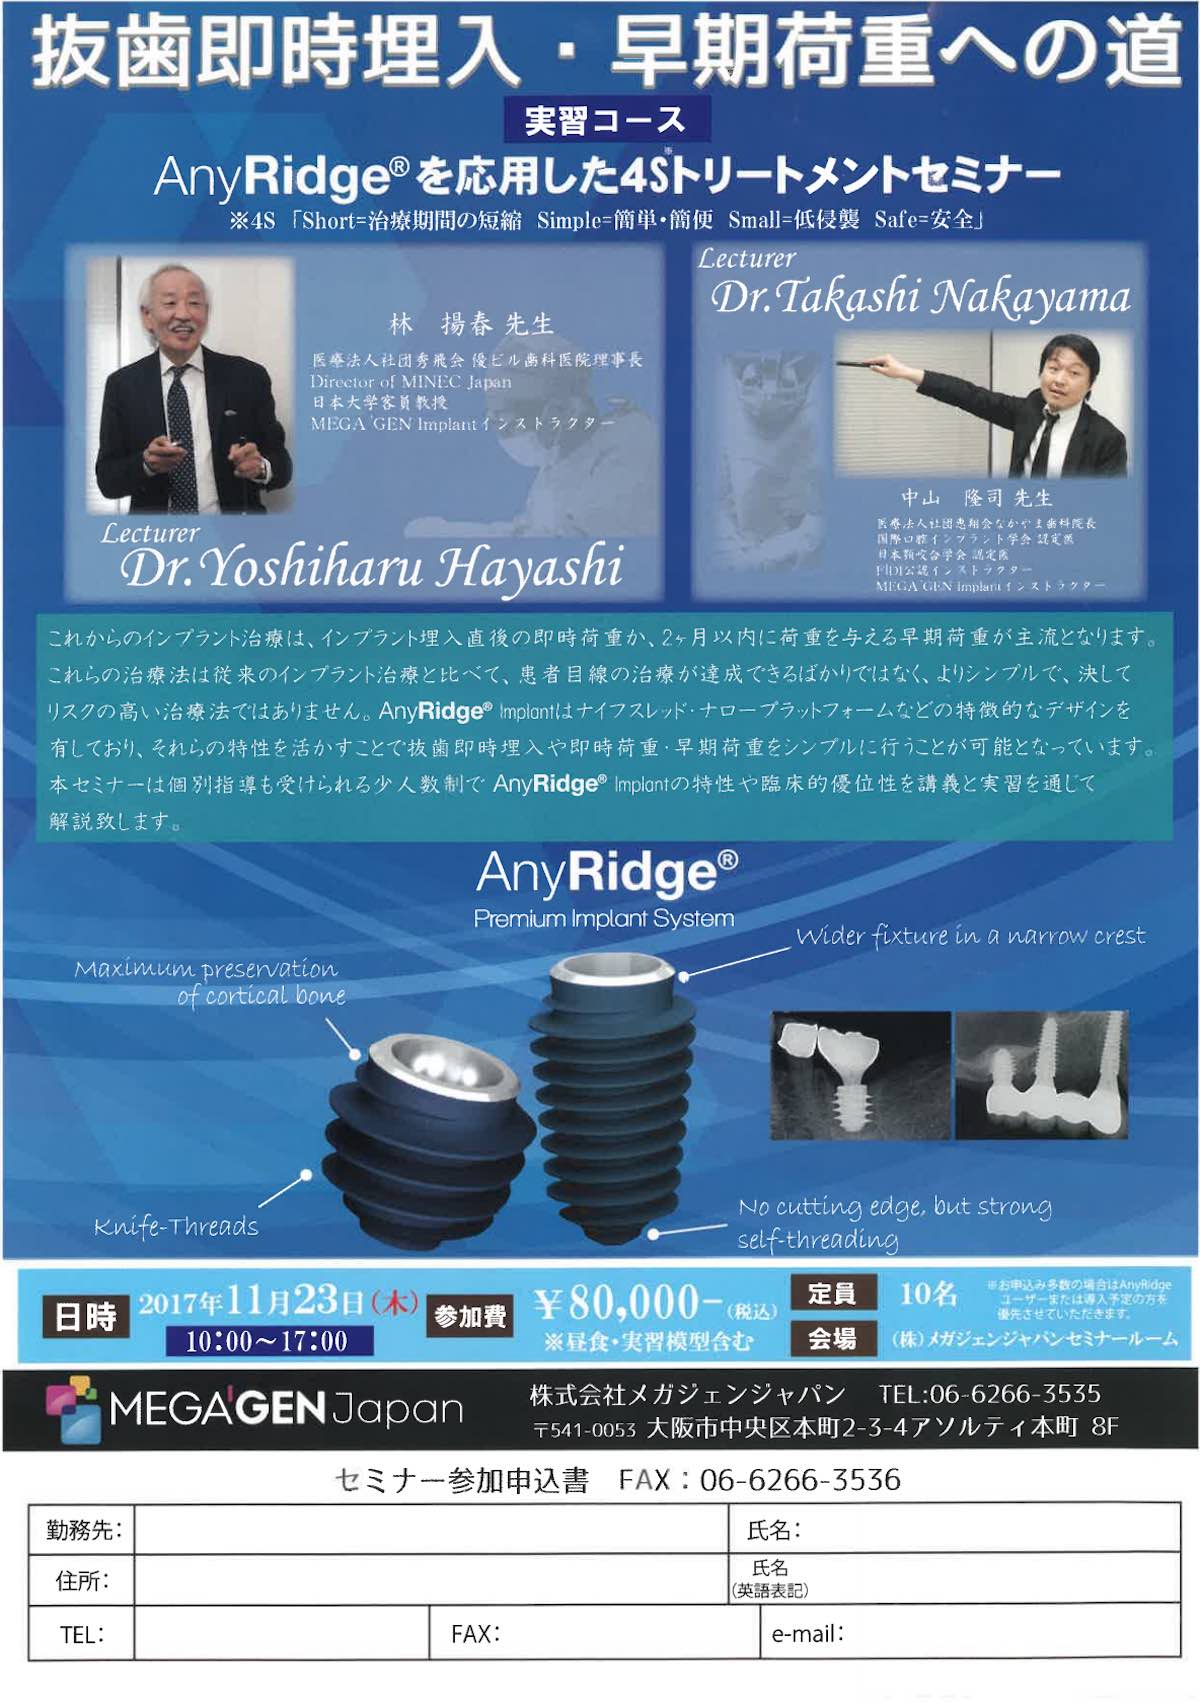 【歯科医師向け情報】【2017/11/23 大阪】 】｢AnyRidgeを応用した4Sトリートメントセミナー｣実習コースの講師を務めます